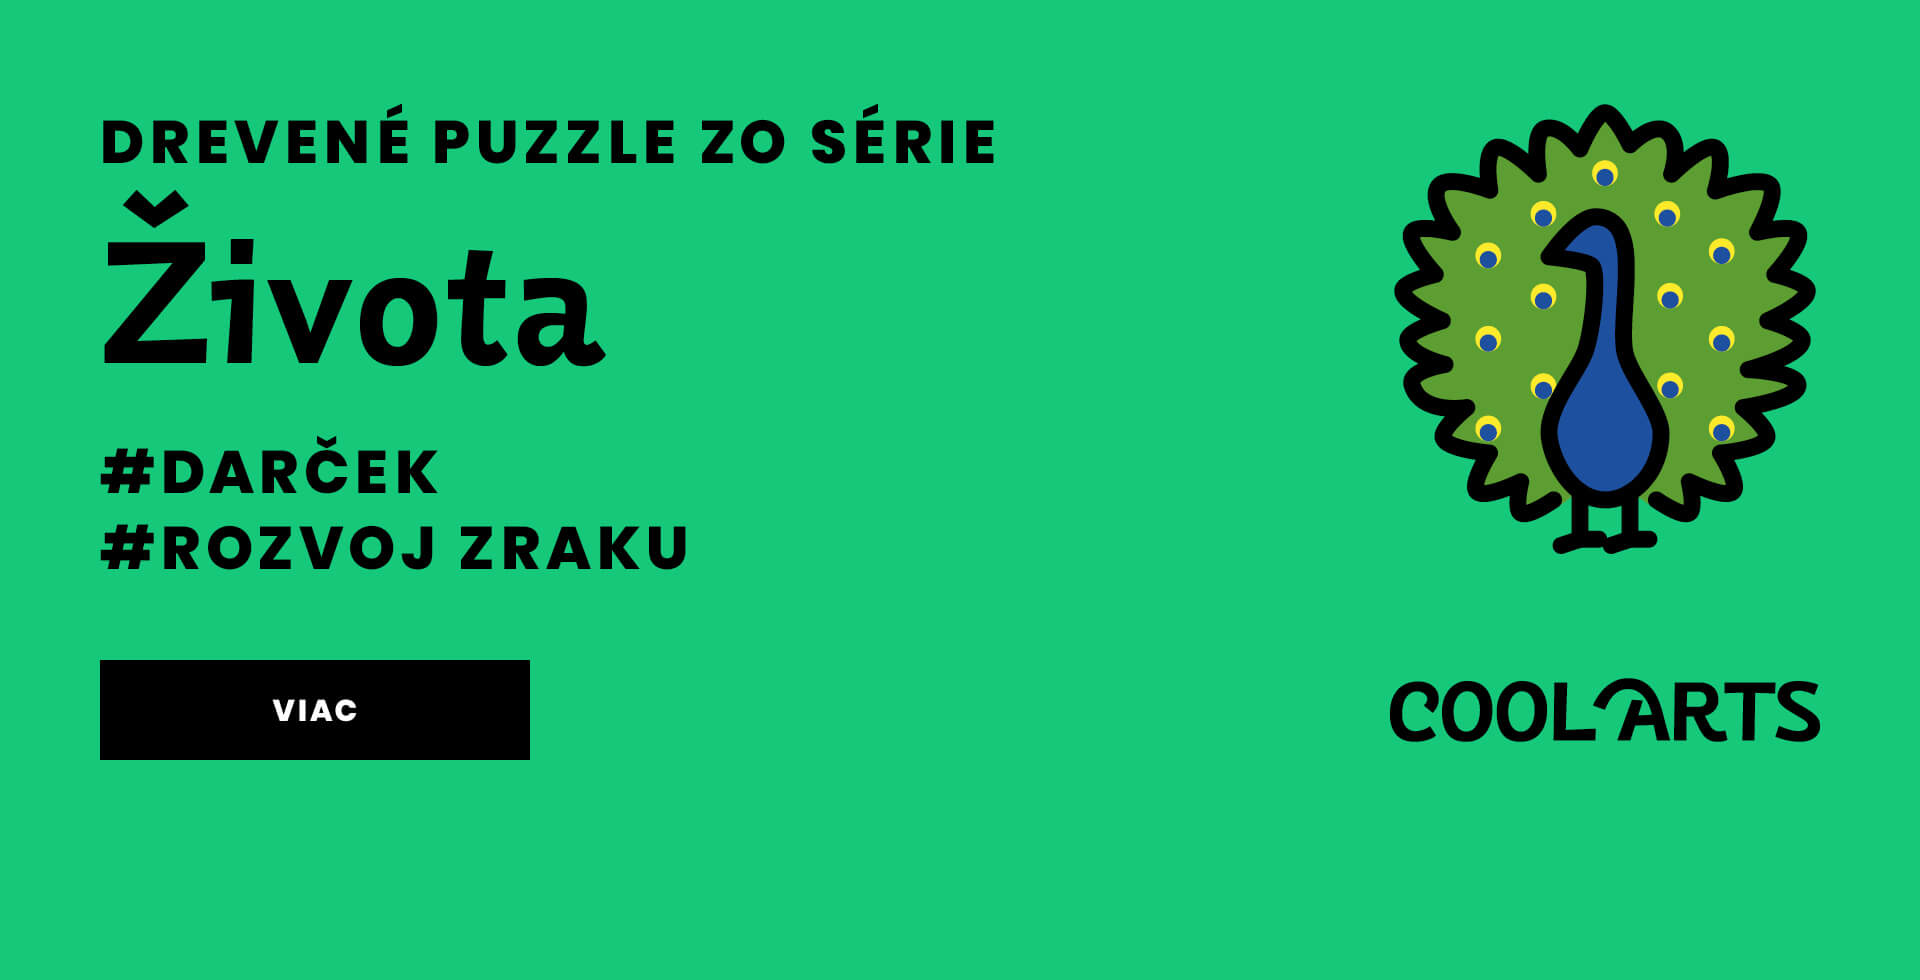 Drevene puzzle - Seria Zivota - CoolArts